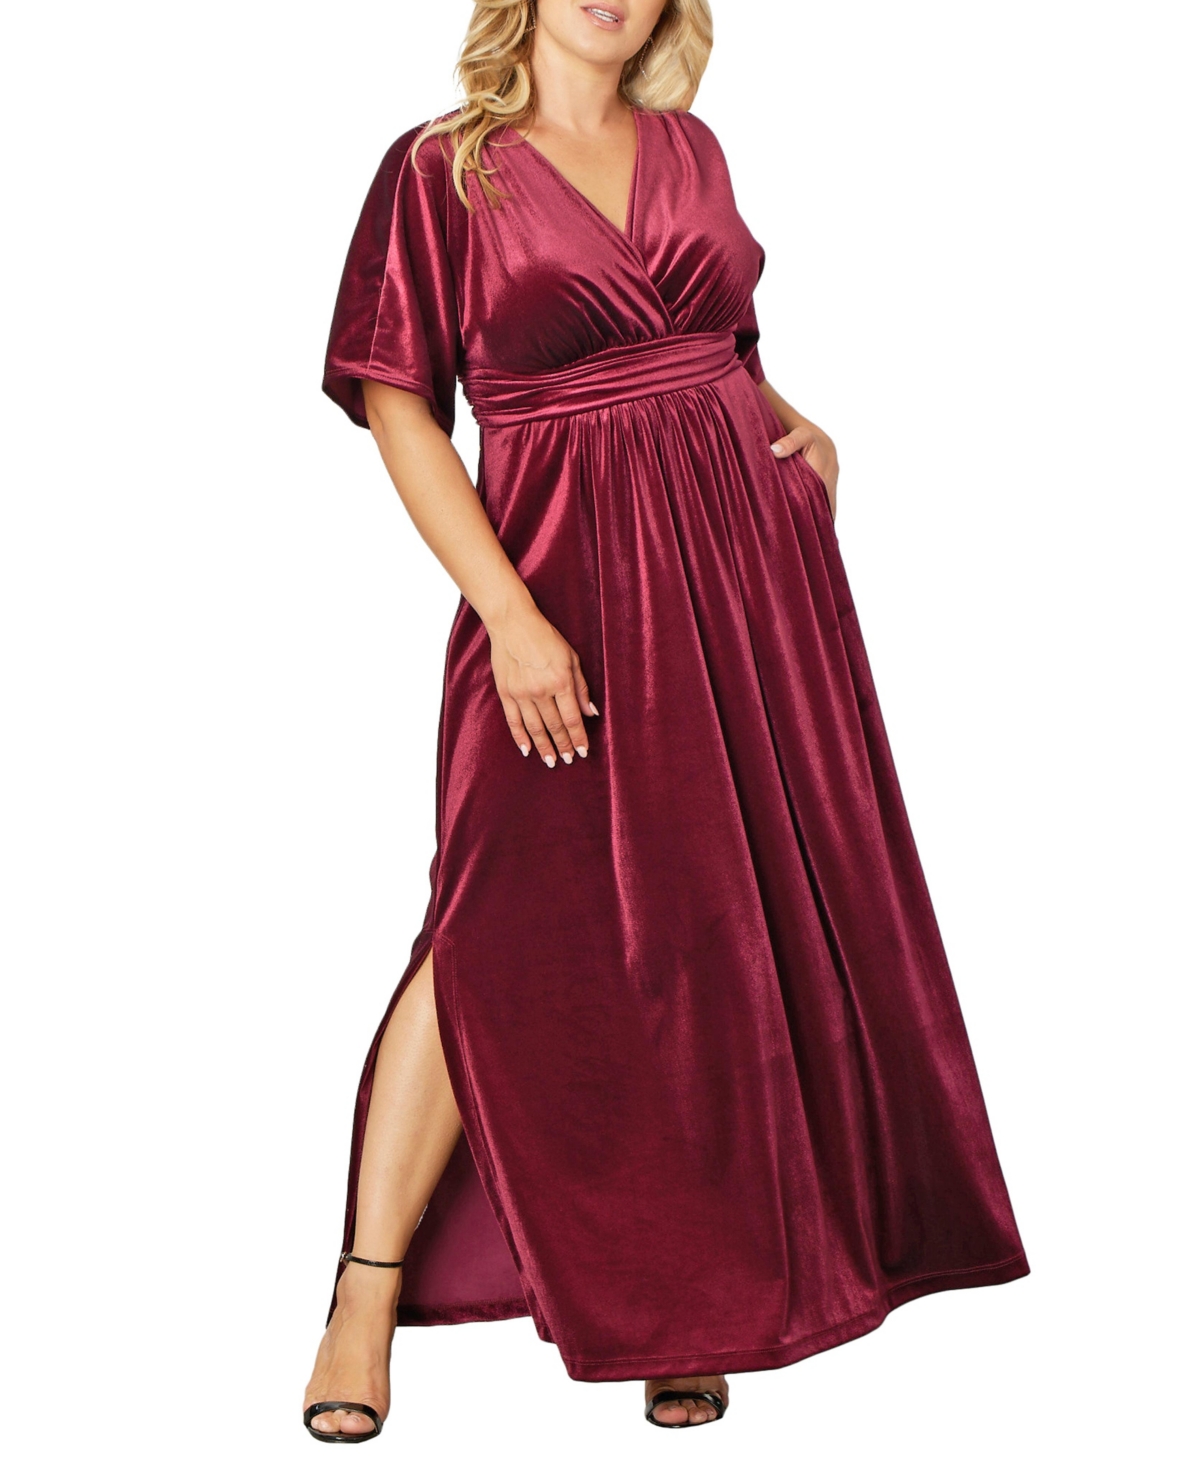 1940s Plus Size Dresses | Swing Dress, Tea Dress Womens Plus Size Verona Velvet Evening Gown - Pinot noir $188.00 AT vintagedancer.com